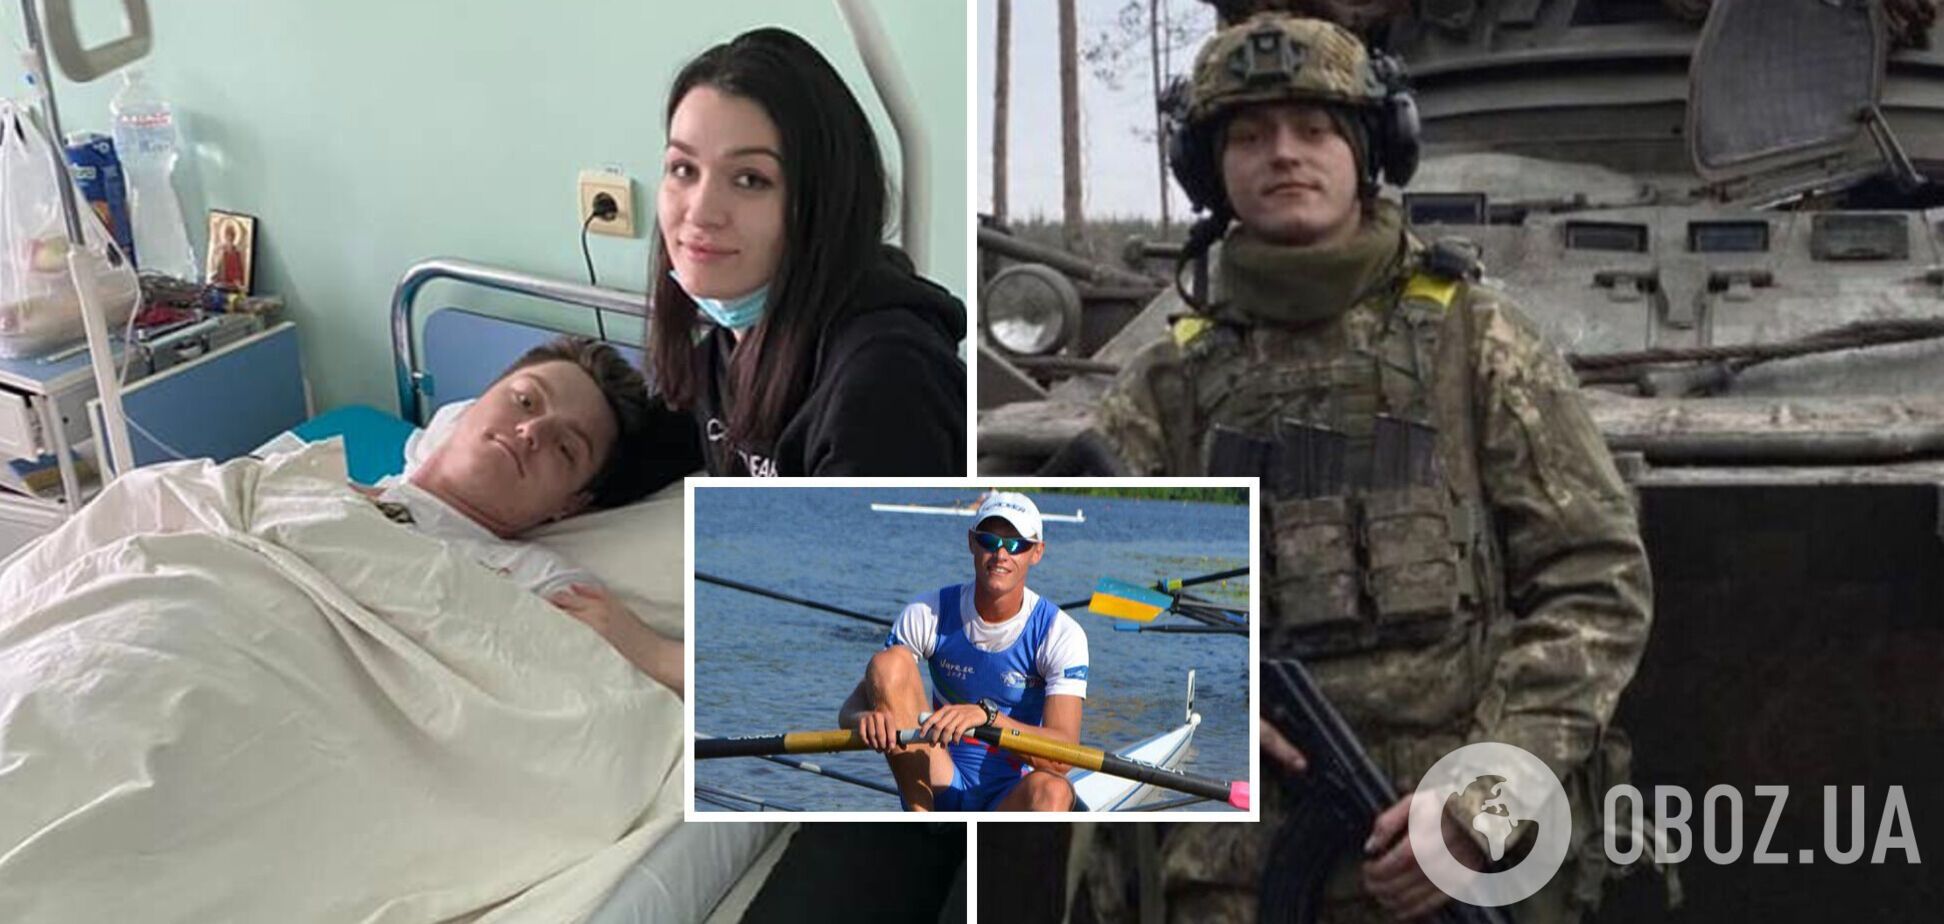 'Истекал кровью после прямого попадания танка': врачи в Днепре шесть часов спасали жизнь известному гребцу